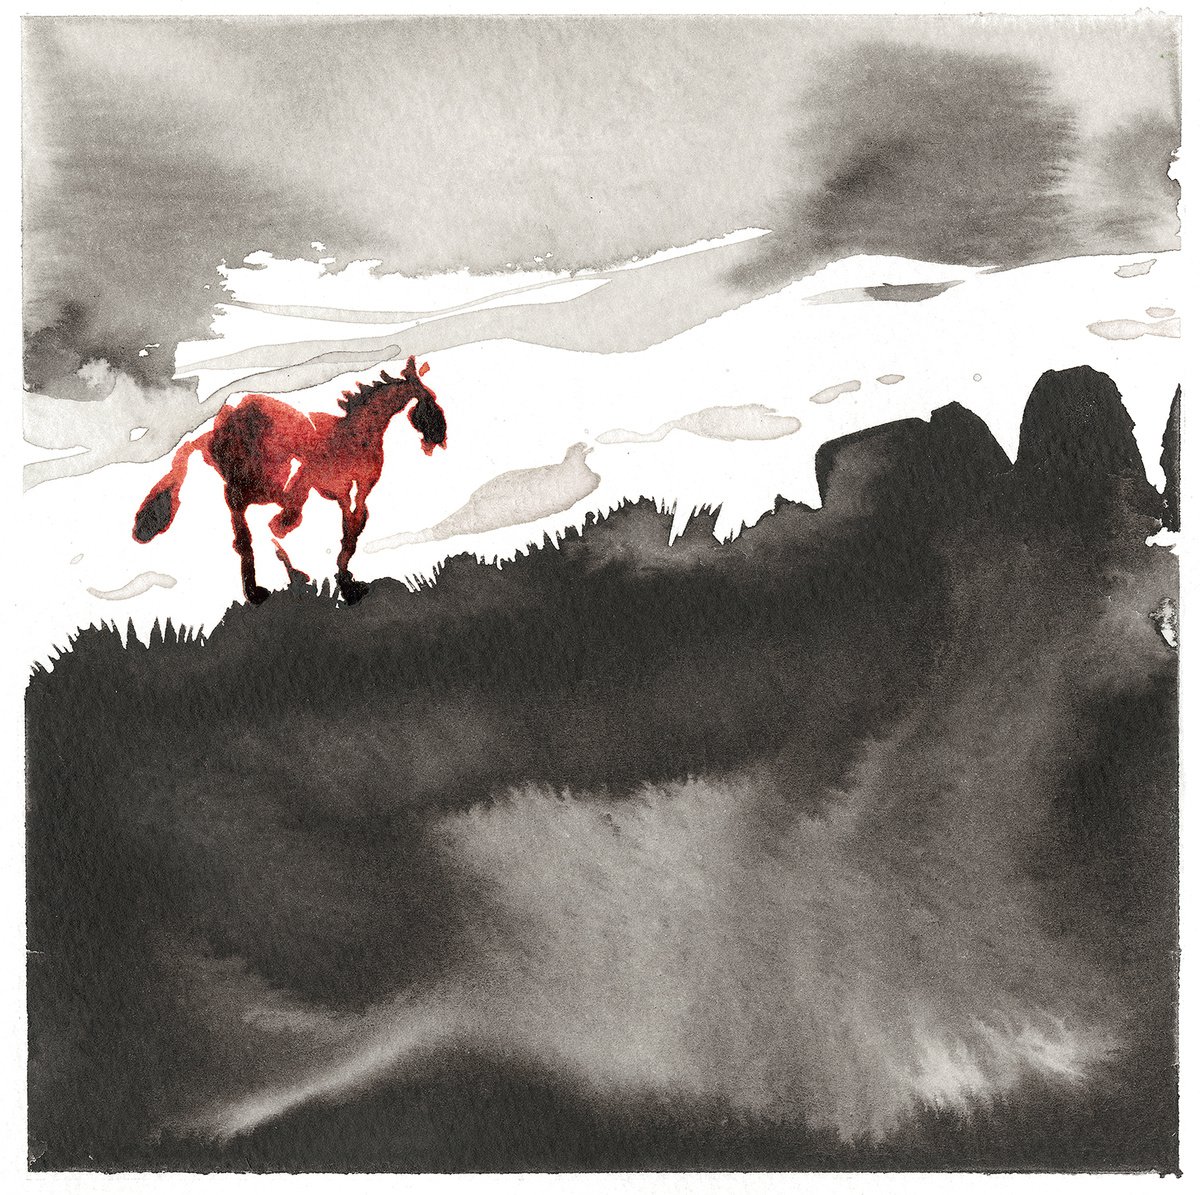 Wild Pastures #13 by Steve Deer